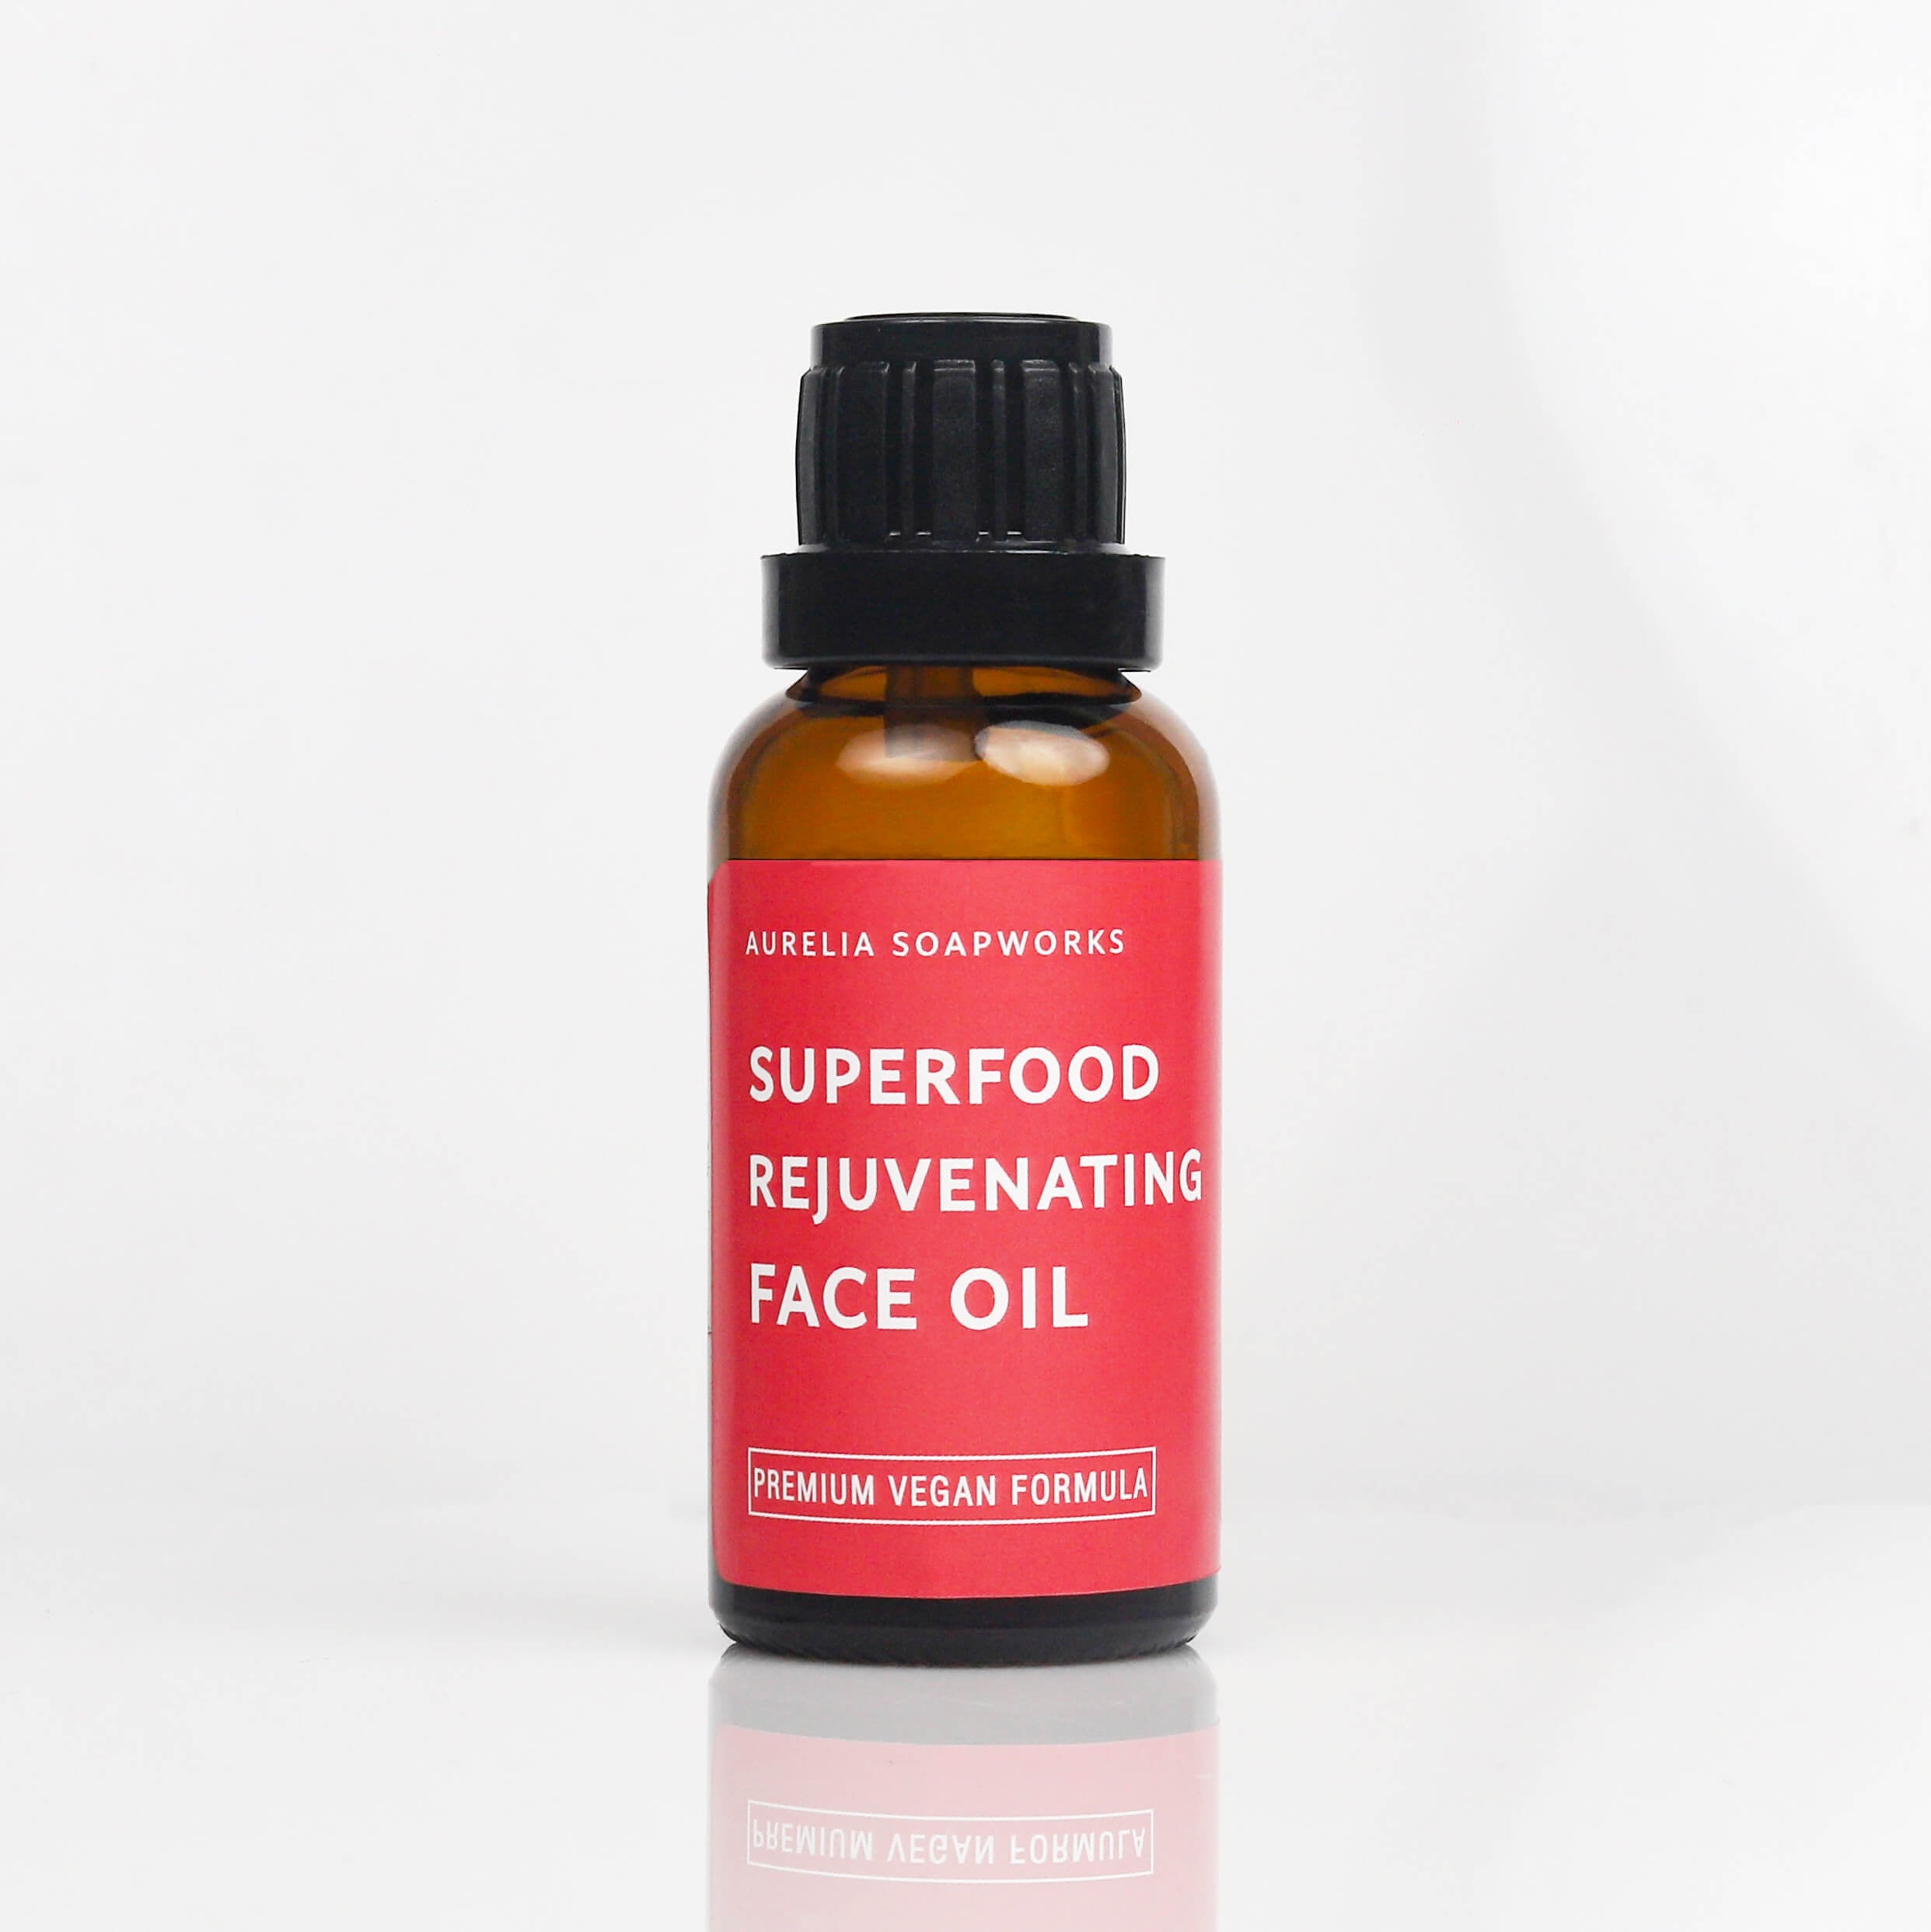 Superfood rejuvenating face oil